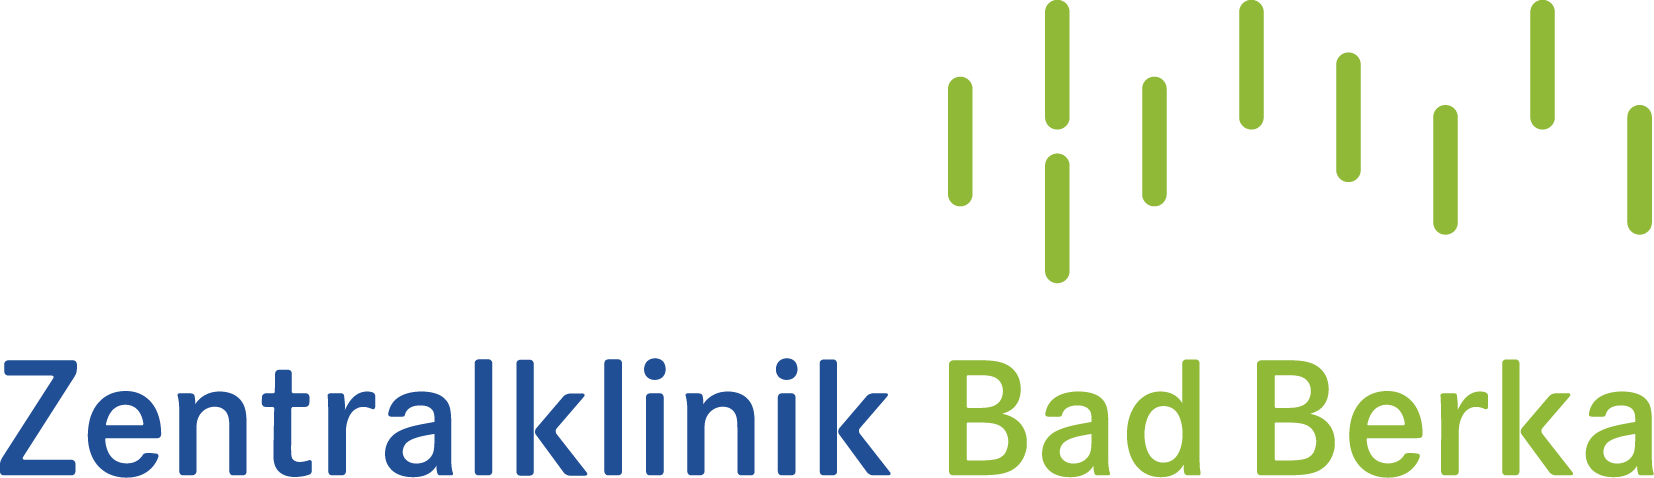 Logo Zentralklinik Bad Berka